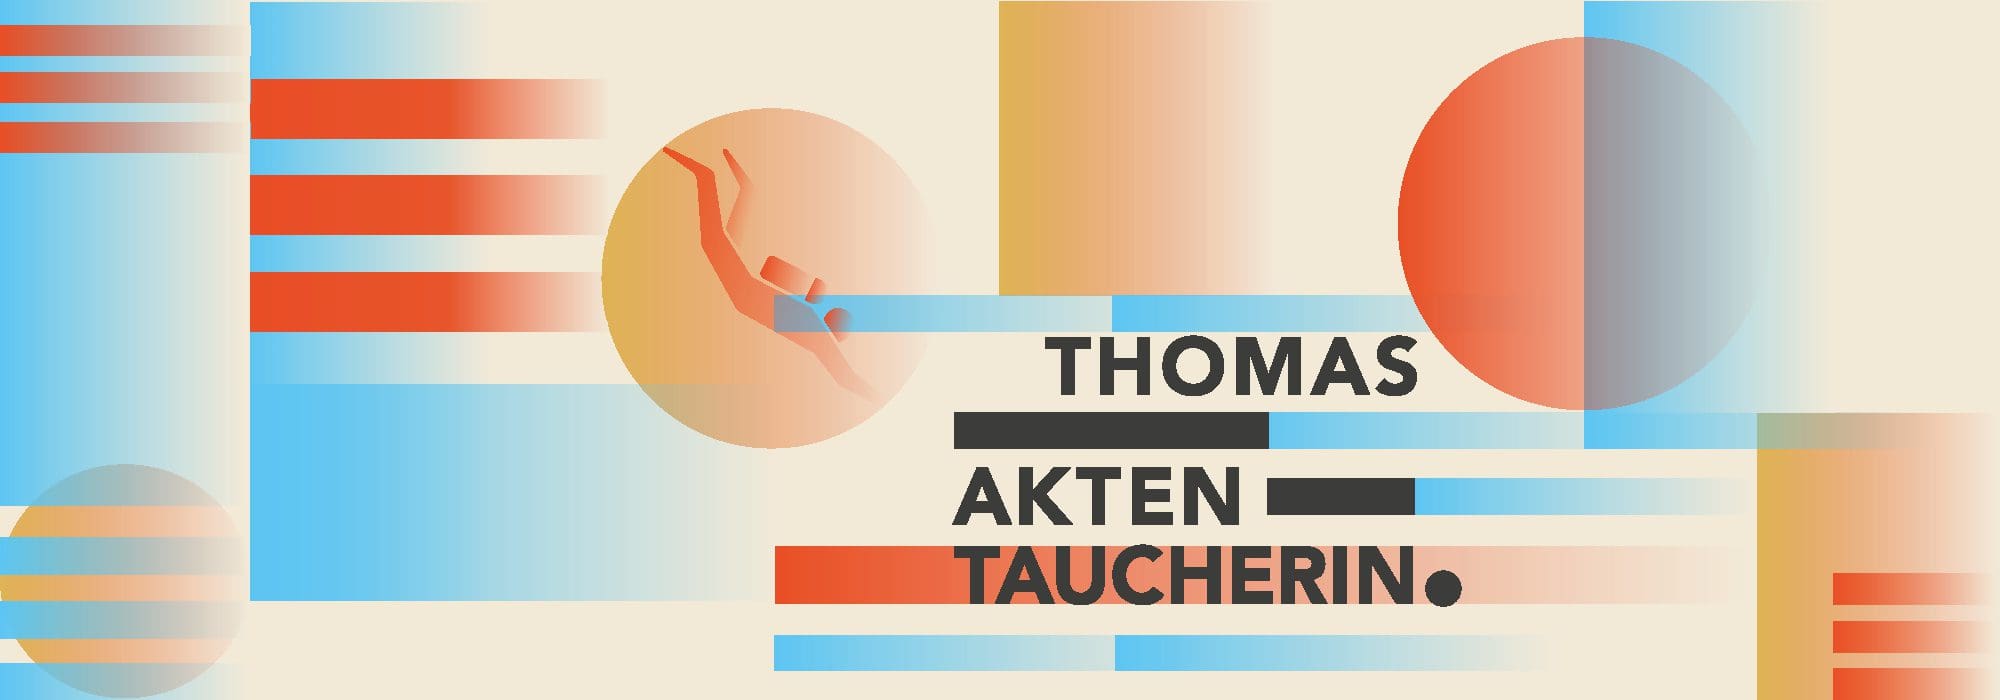 bannière bauhaus pour Thomas aktentaucherin, signé Ich&Kar